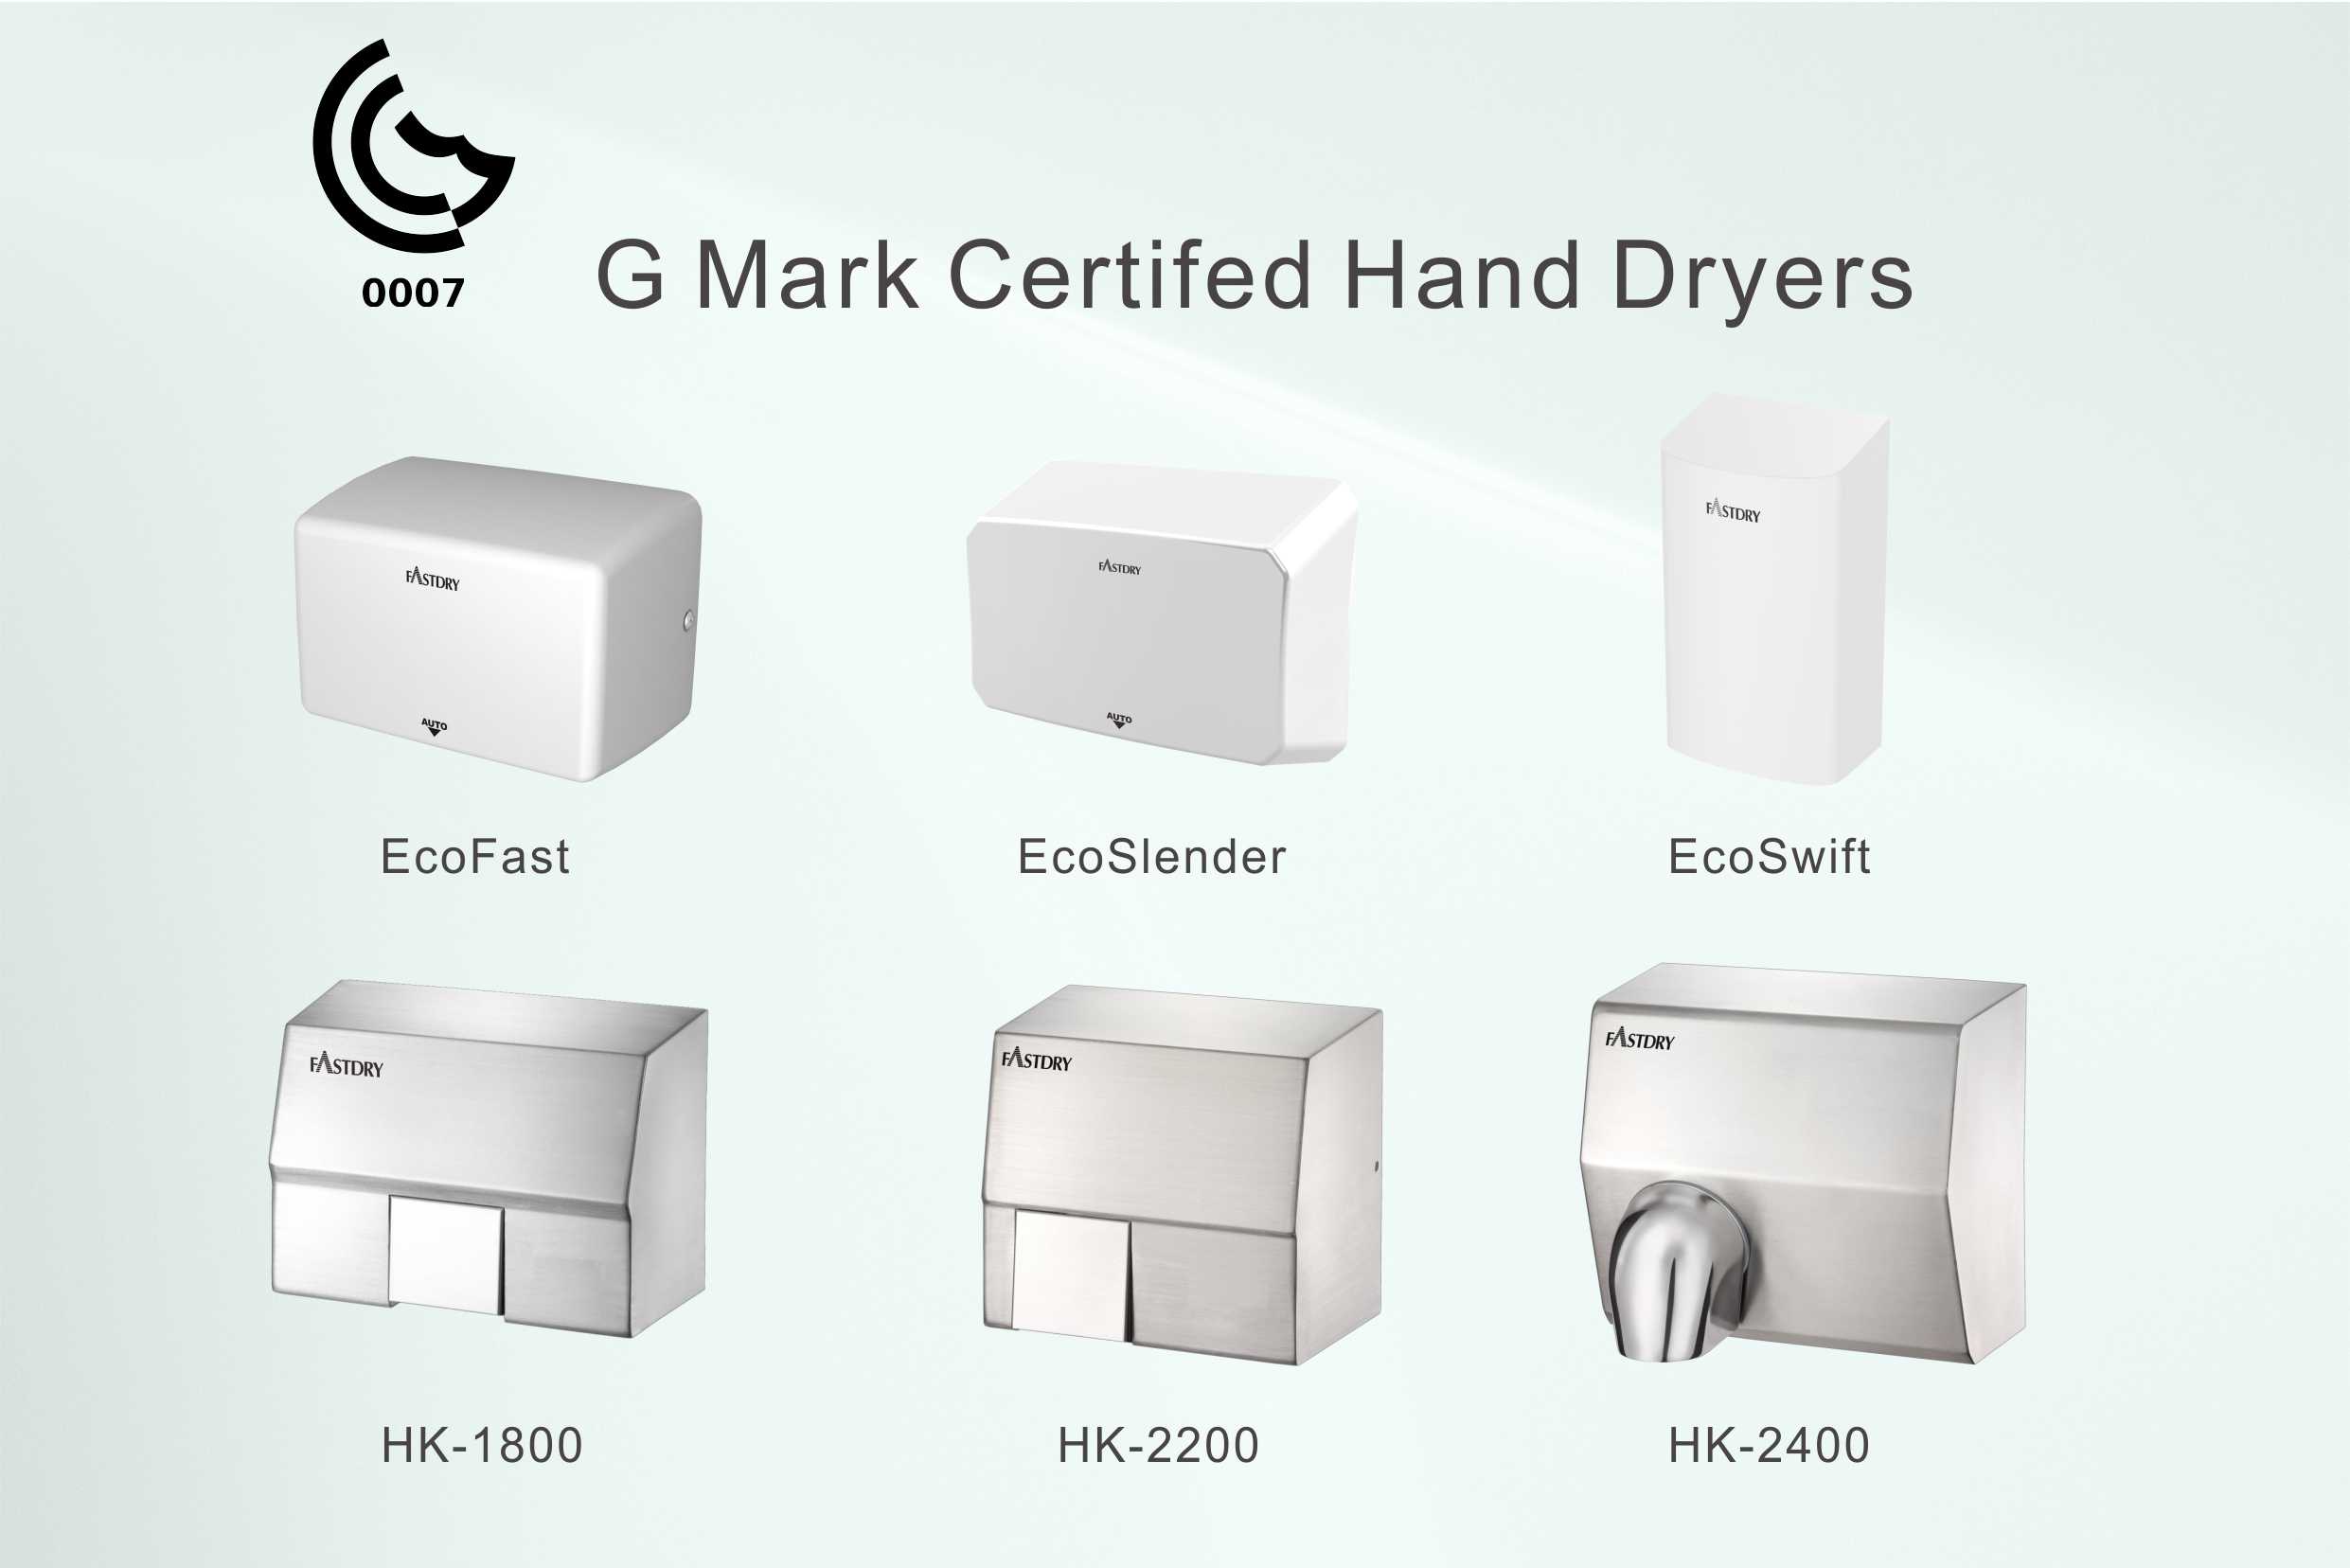 Hokwang's G-Mark Certified Hand Dryers